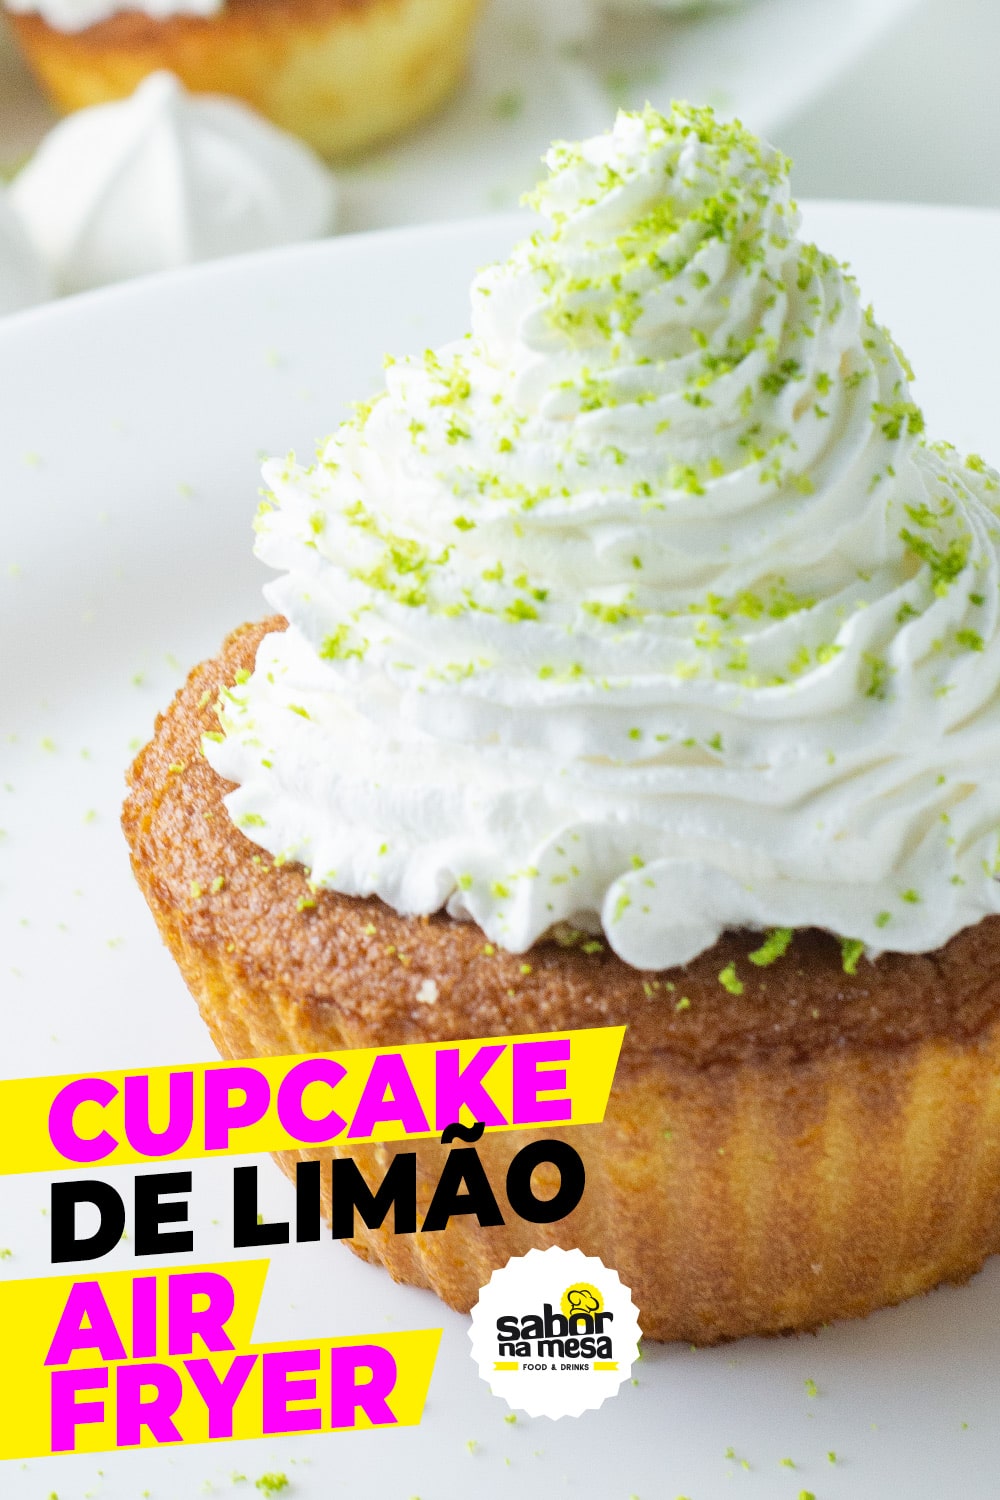 imagem do cupcake de limão para compartilhar no pinterest